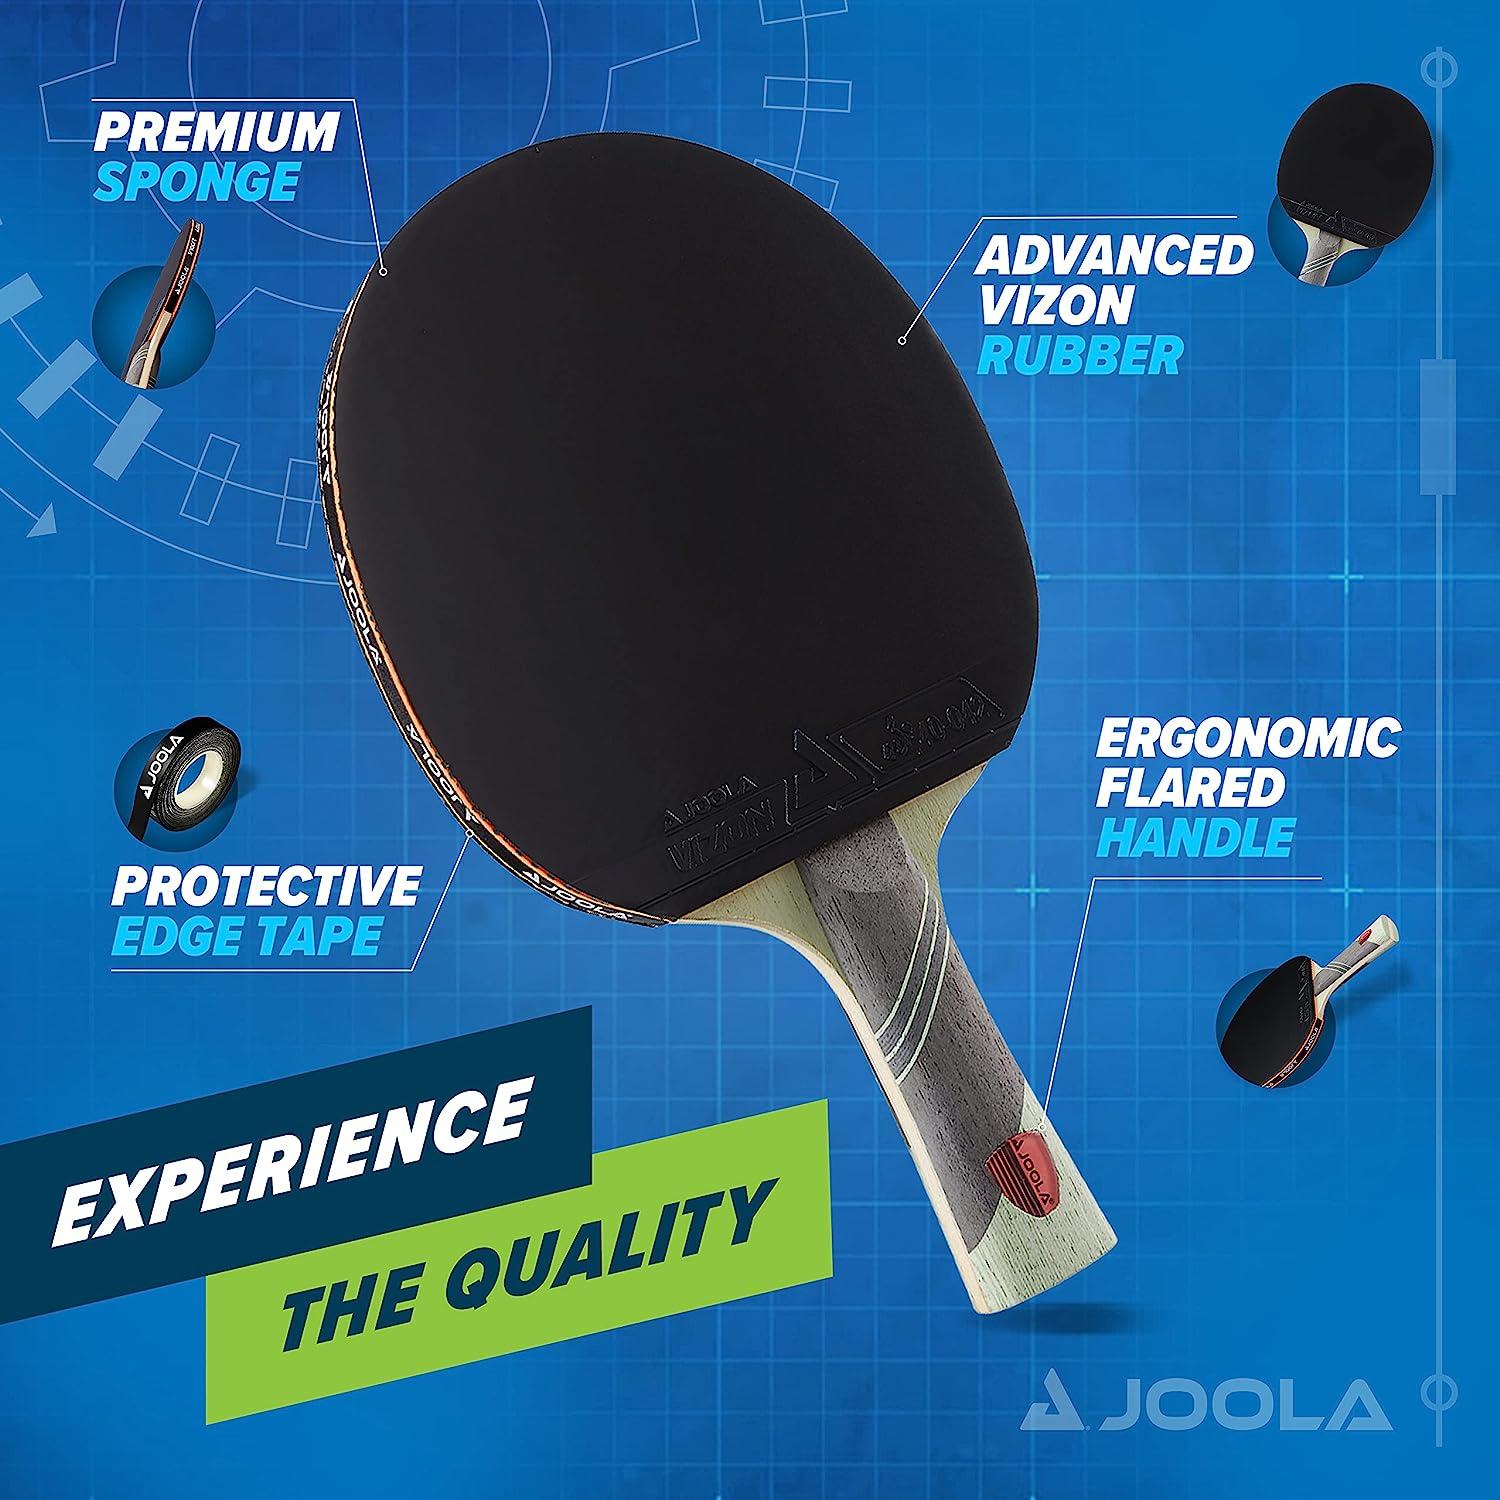 JOOLA 80501 Table Tennis Racket Bag Black/Blue